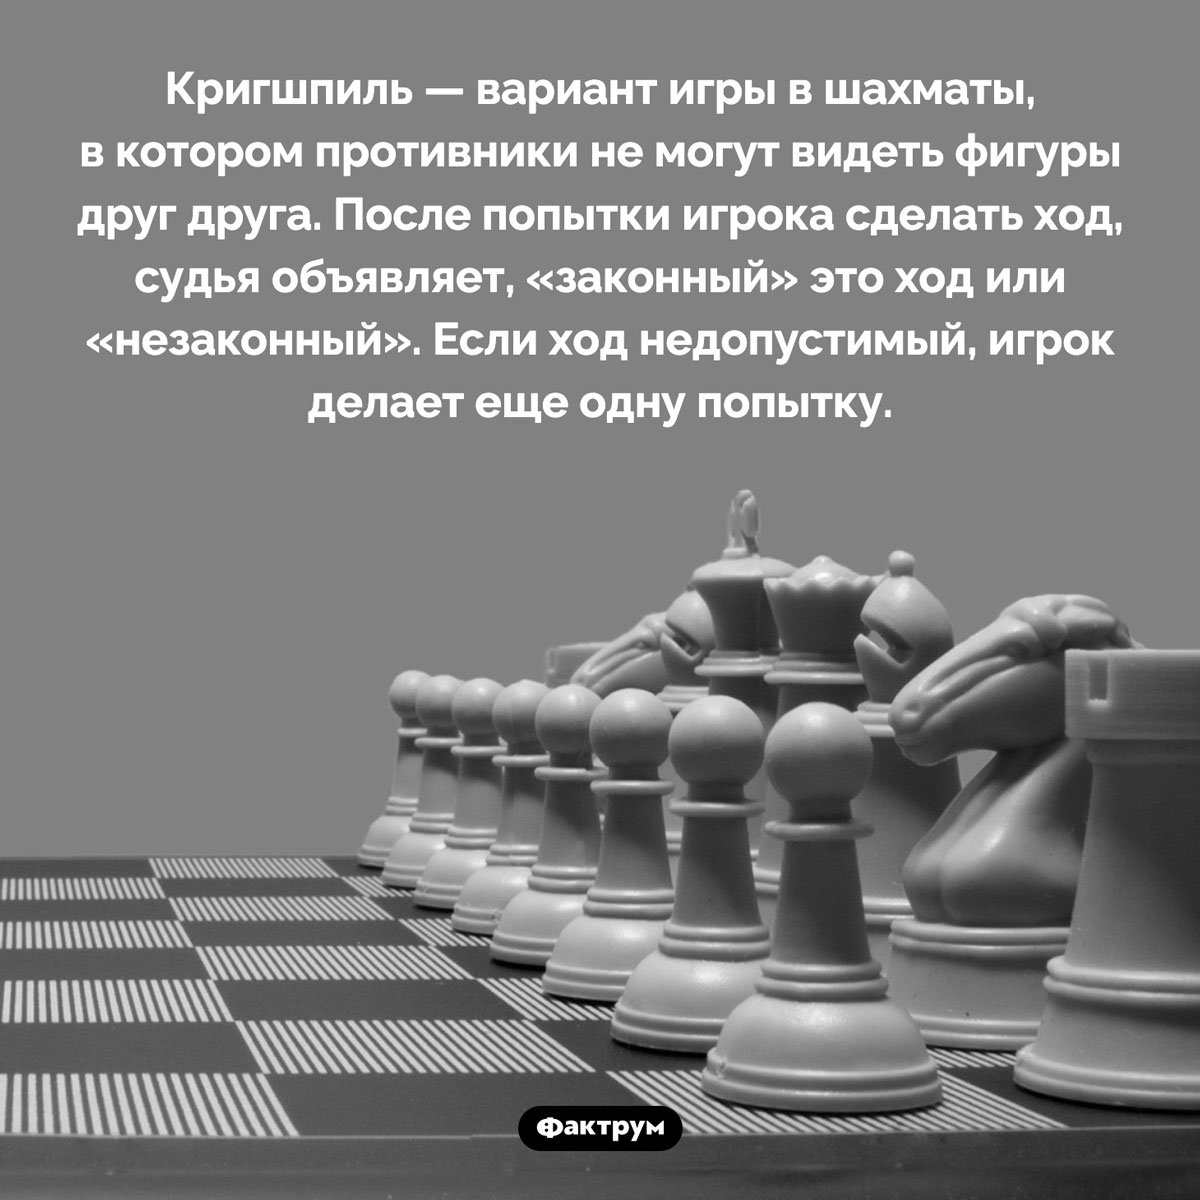 Что такое «кригшпиль». <p>Кригшпиль — вариант игры в шахматы, в котором противники не могут видеть фигуры друг друга. После попытки игрока сделать ход, судья объявляет, «законный» это ход или «незаконный». Если ход недопустимый, игрок делает еще одну попытку.</p>